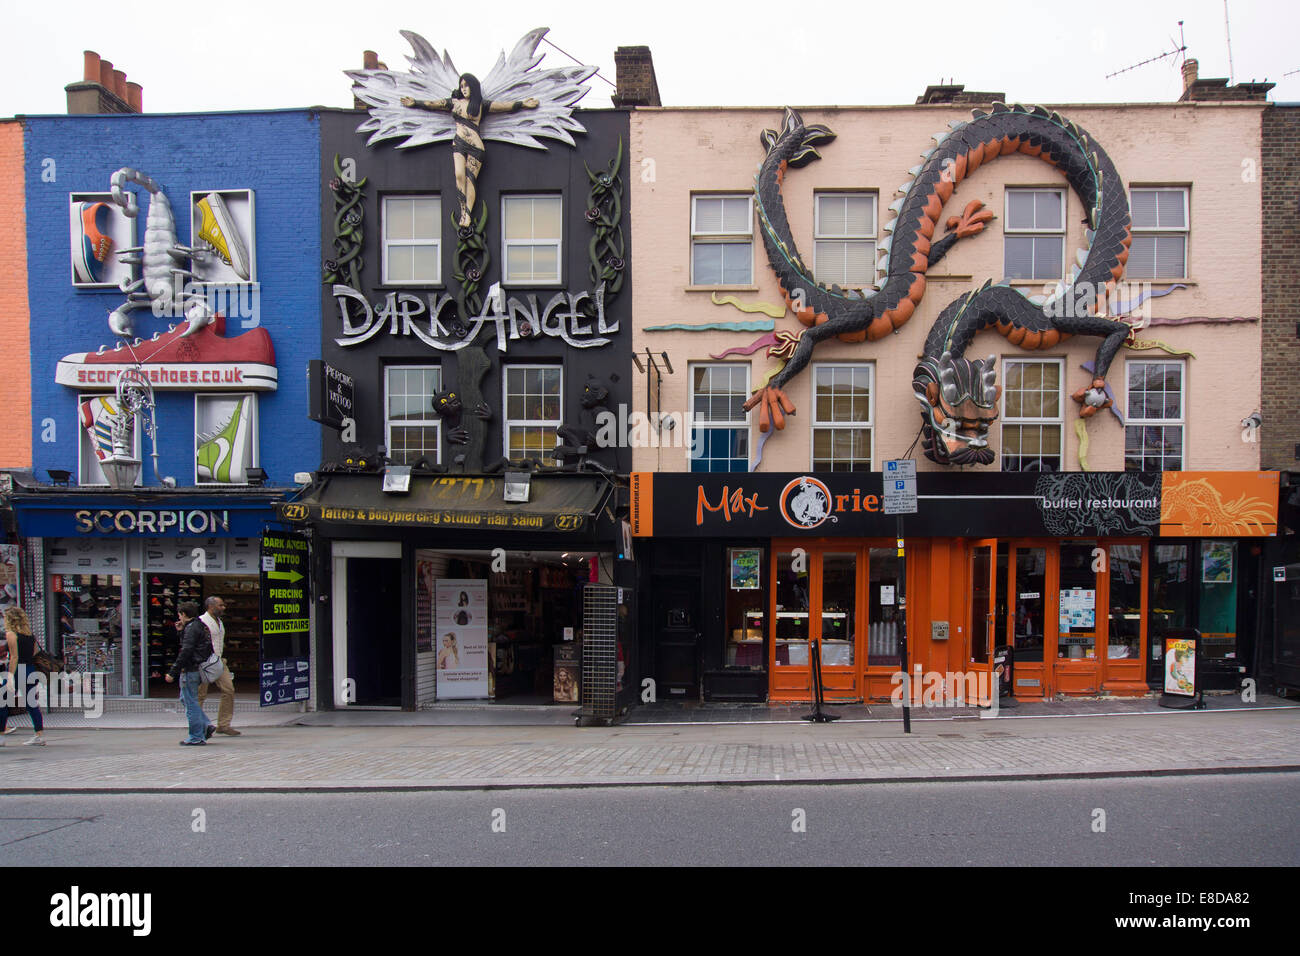 Calle típica escena con coloridas casas en la ciudad de Camden, Londres, Inglaterra, Reino Unido Foto de stock